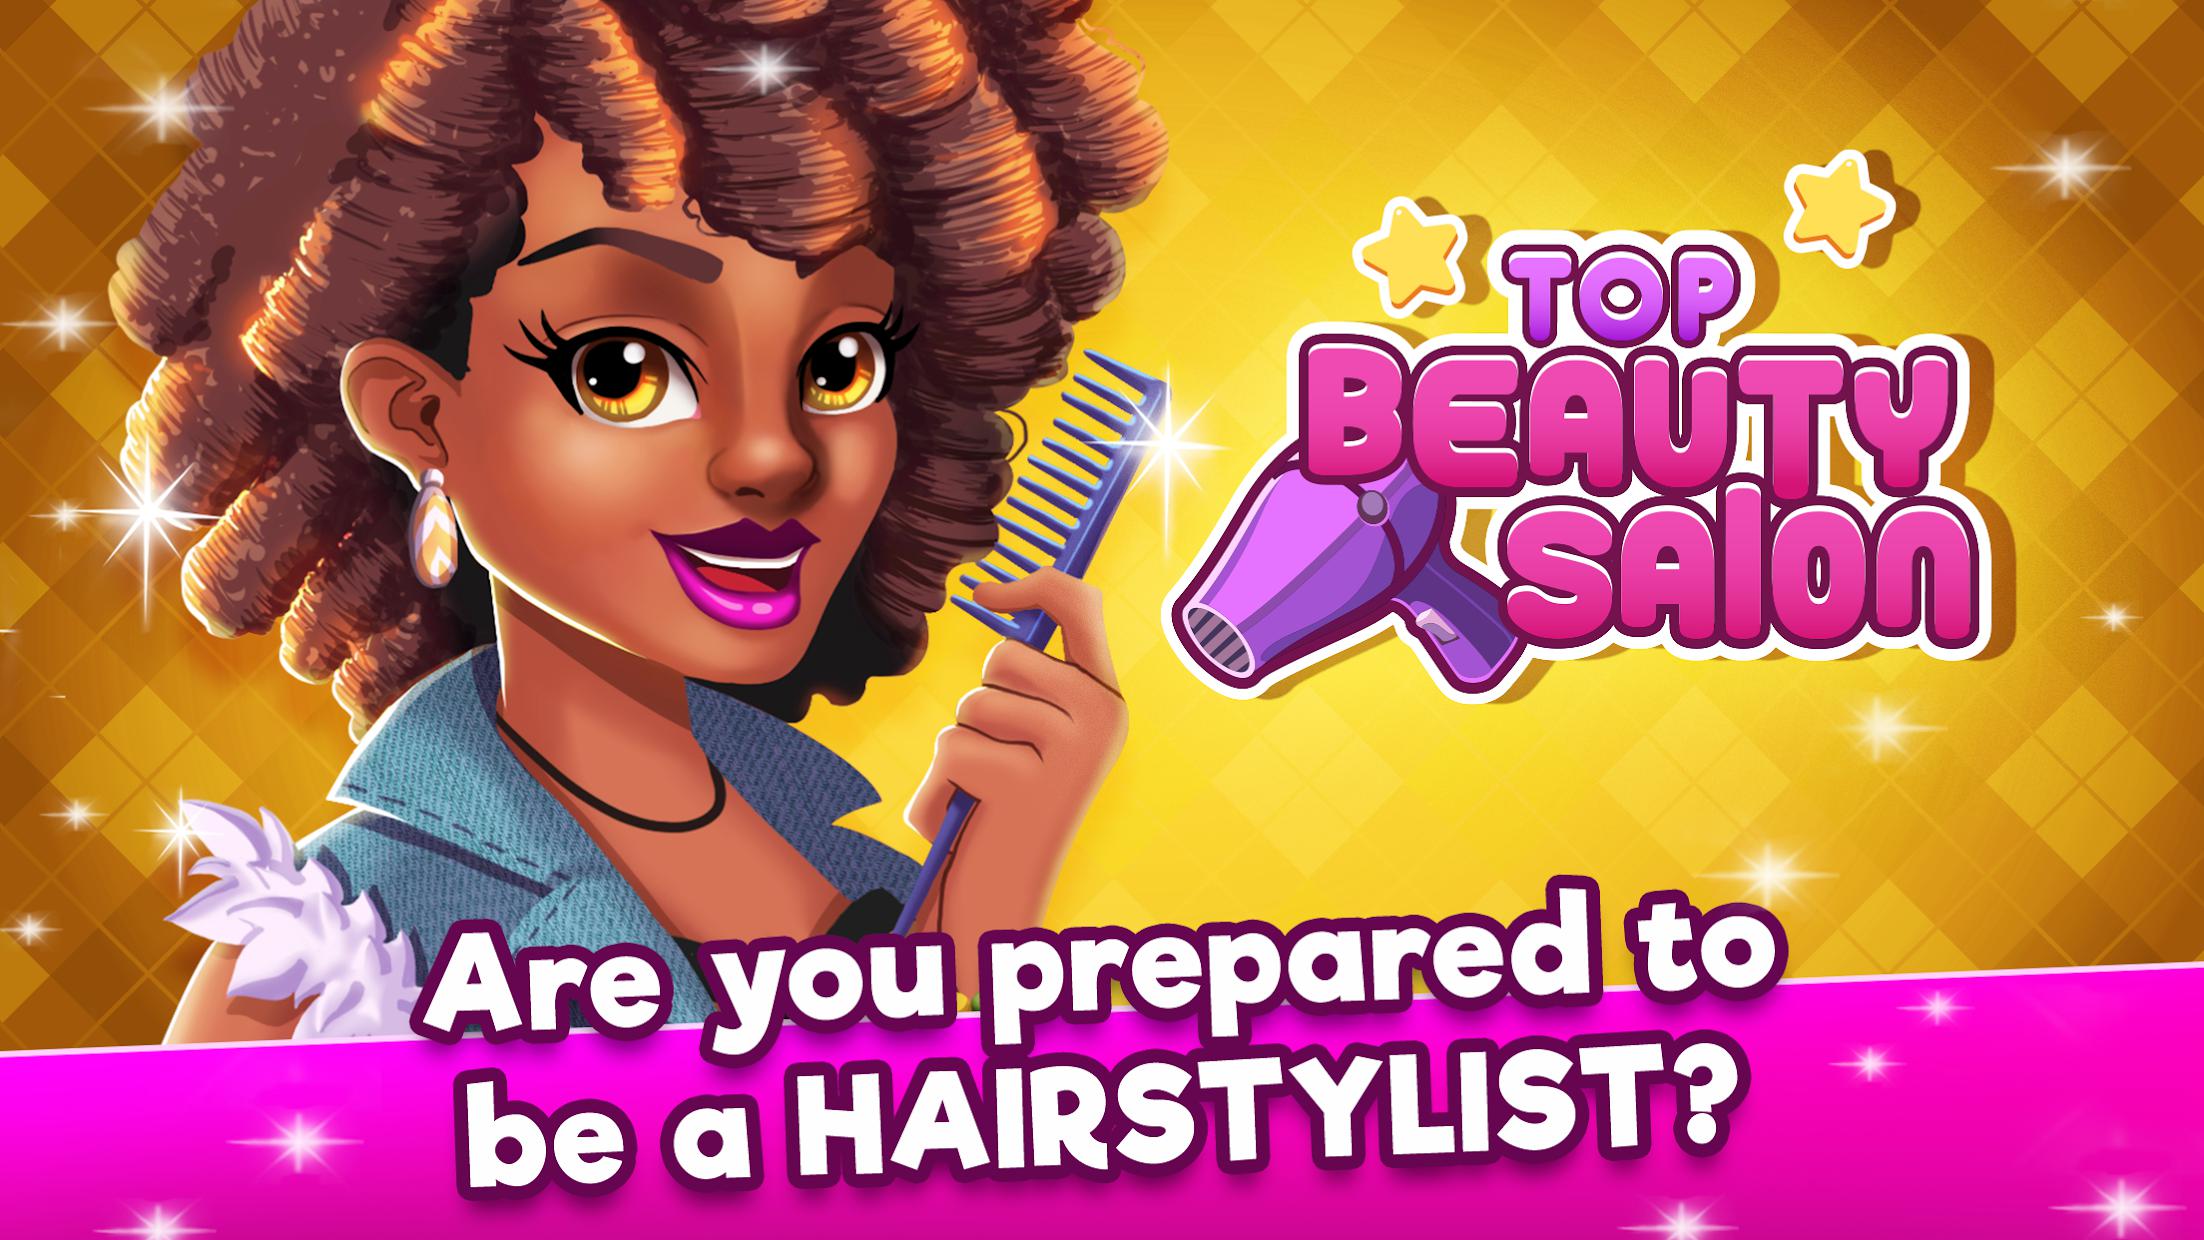 Top Beauty Salon -  Hair and Makeup Parlor Game